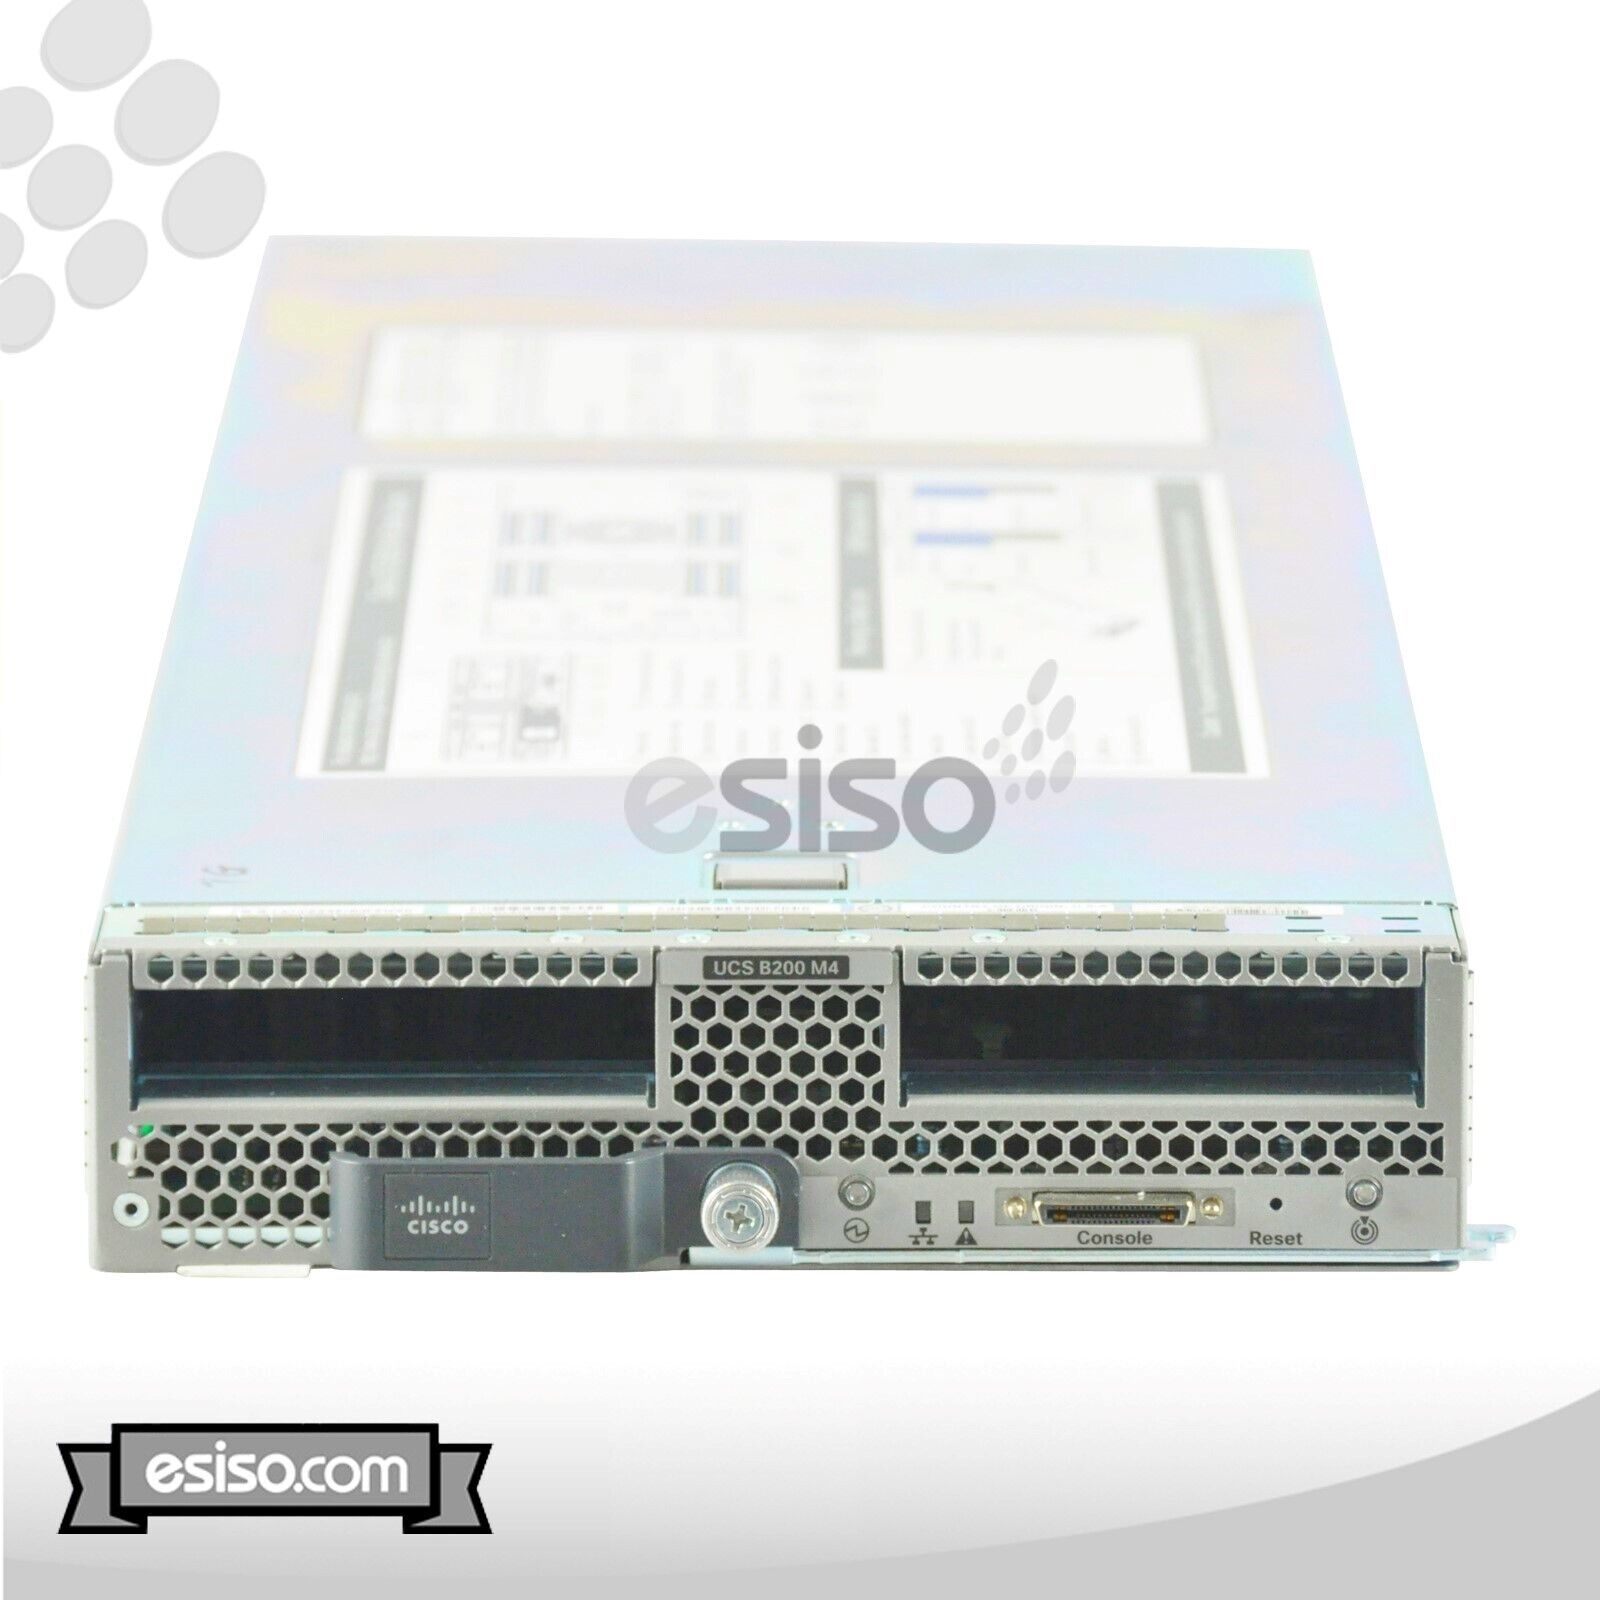 CISCO UCS B200 M4 BLADE 2x 14 CORE E5-2690v4 2.6GHz 512GB RAM 1x240GB SSD